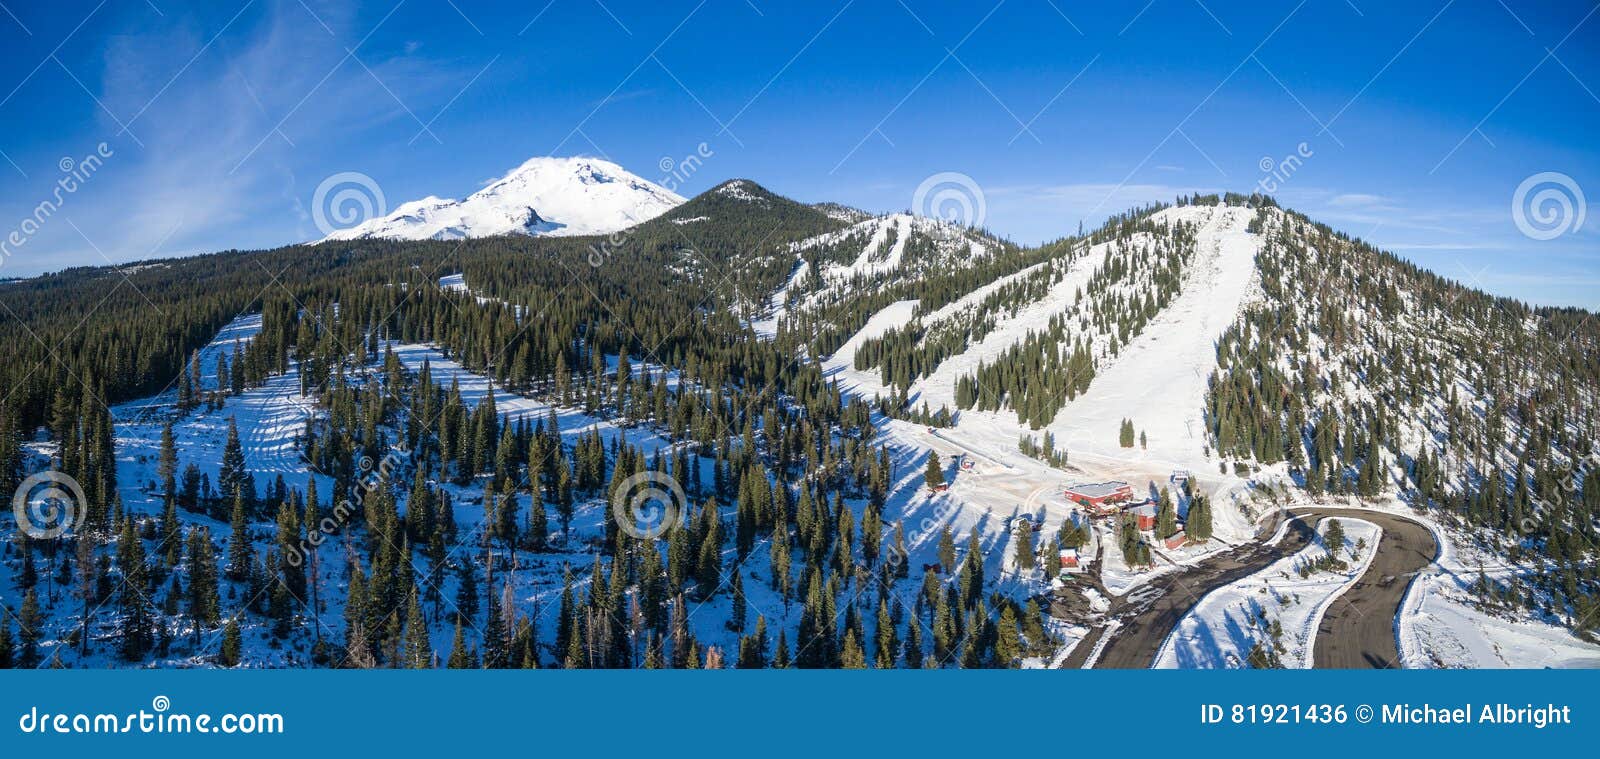 mount shasta ski park